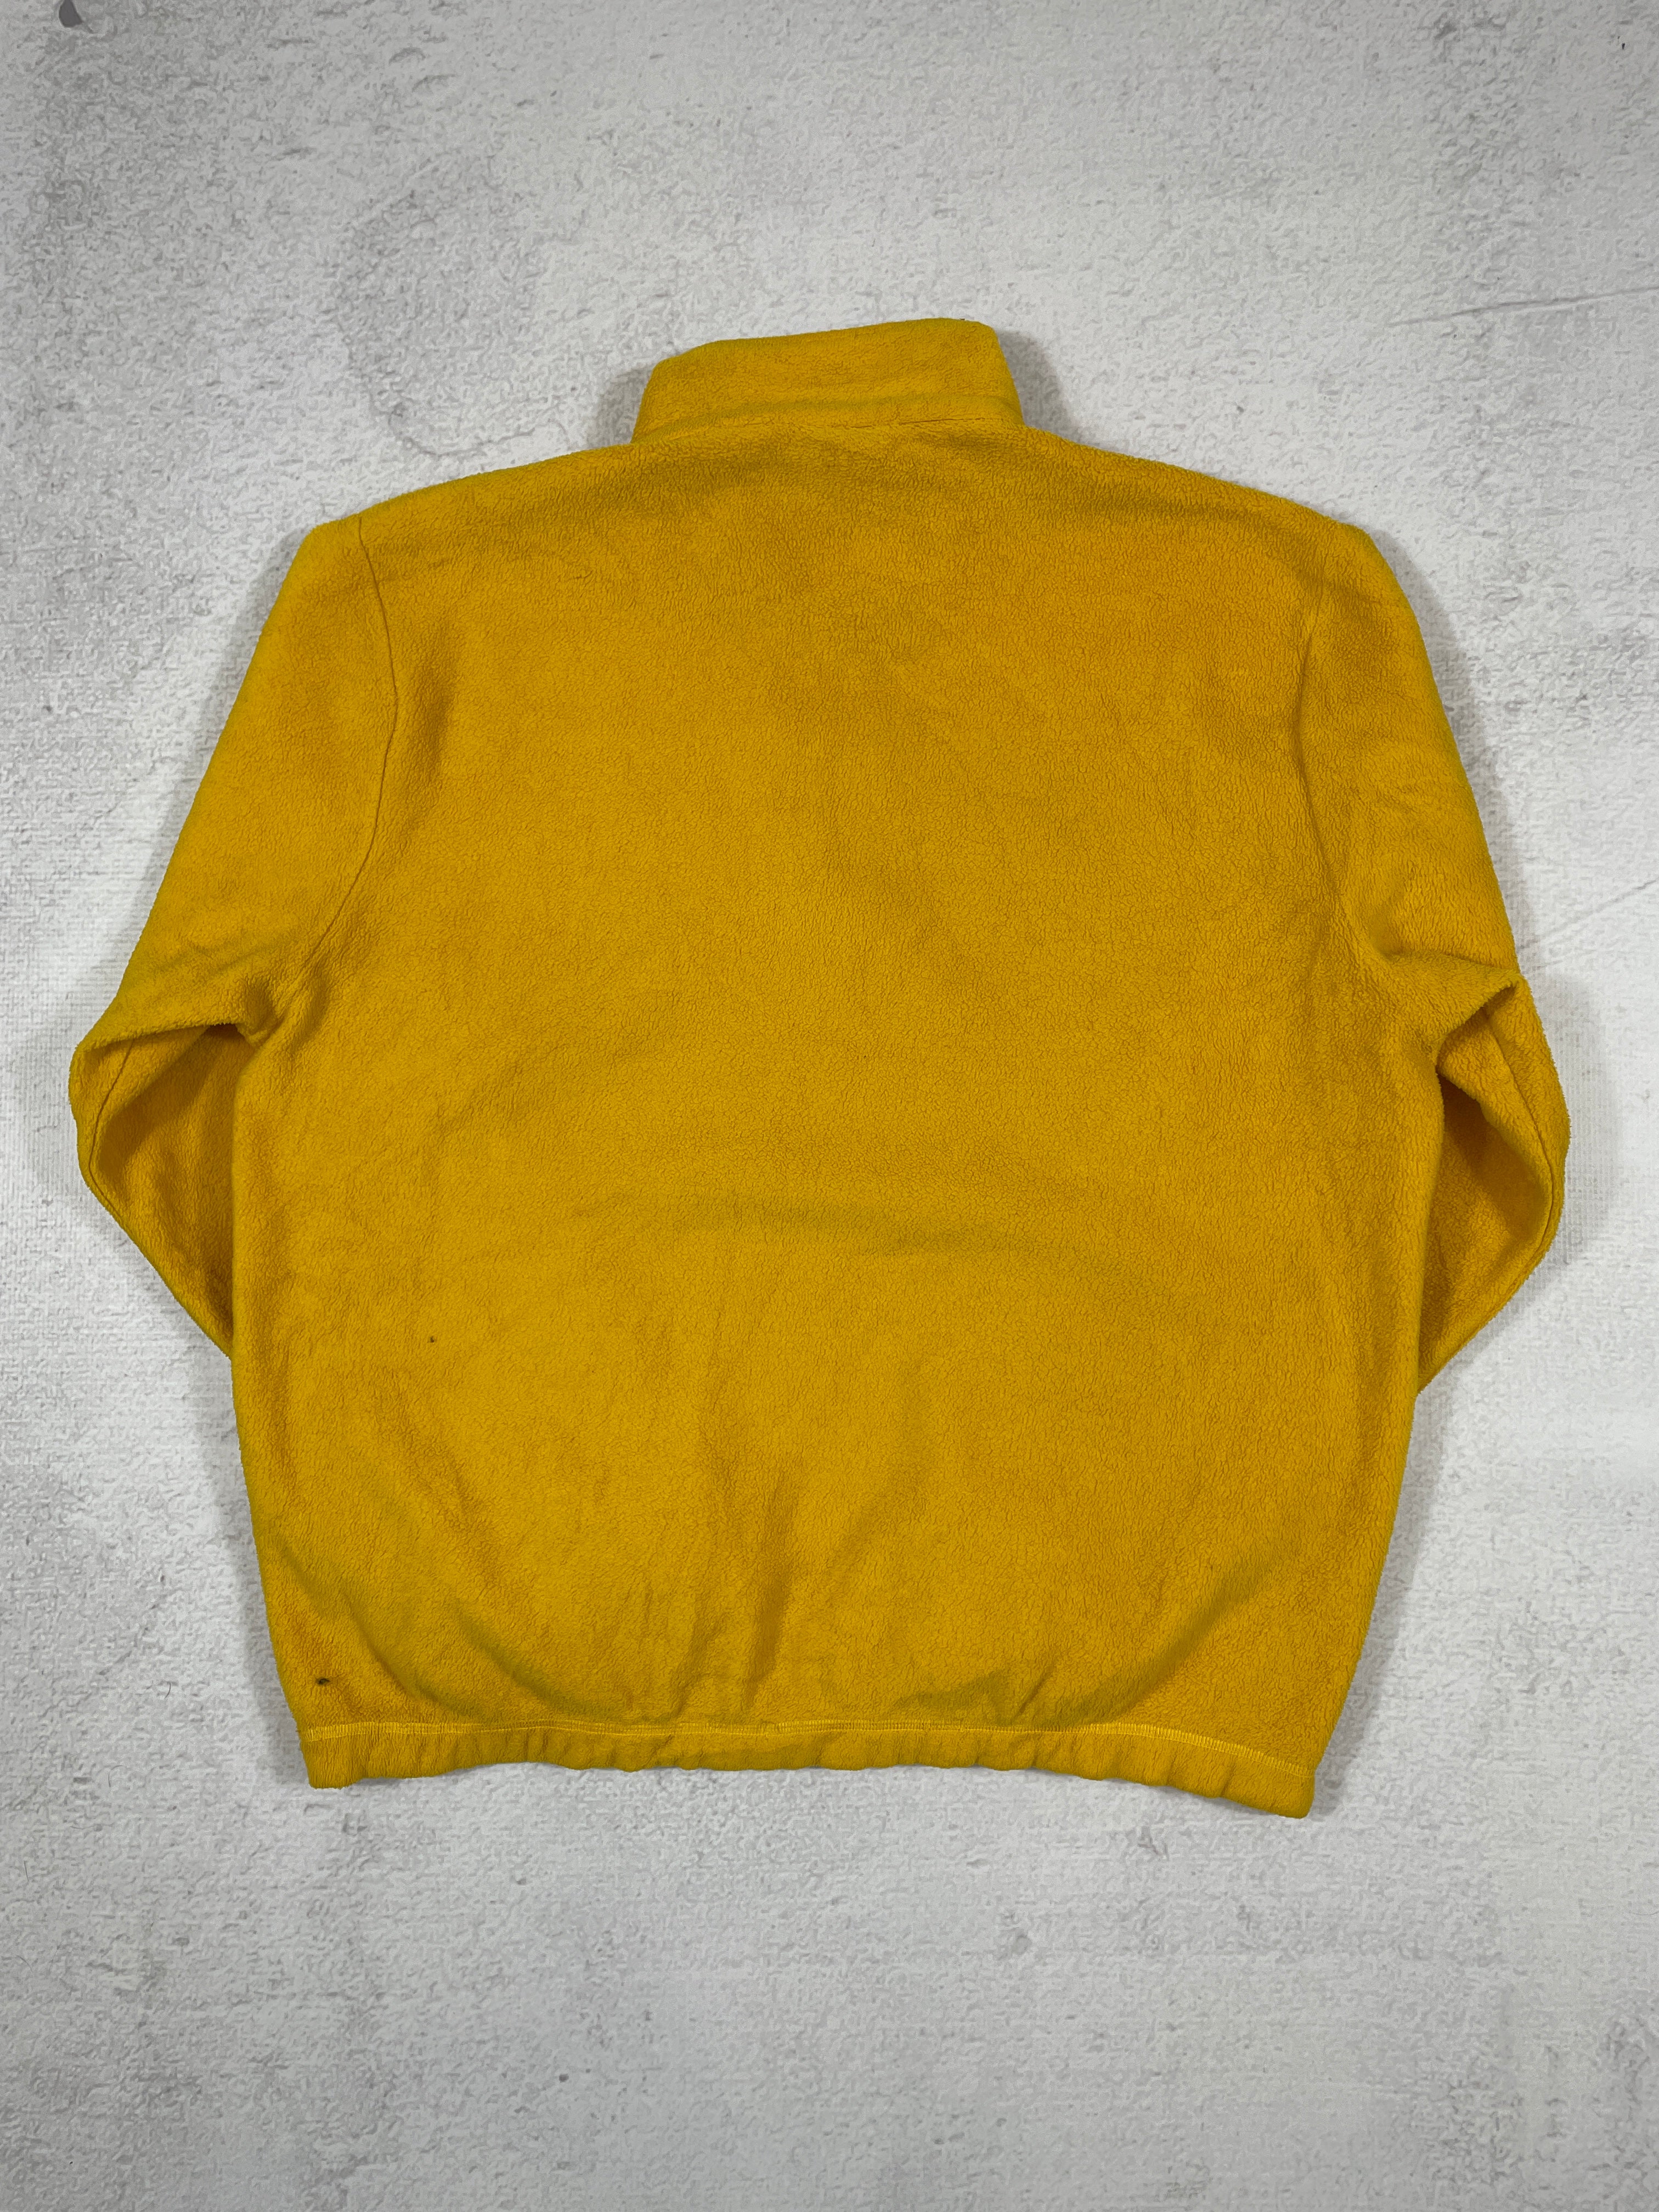 Vintage Nautica Competition 1/4 Zip Fleece Sweatshirt - Men's XL